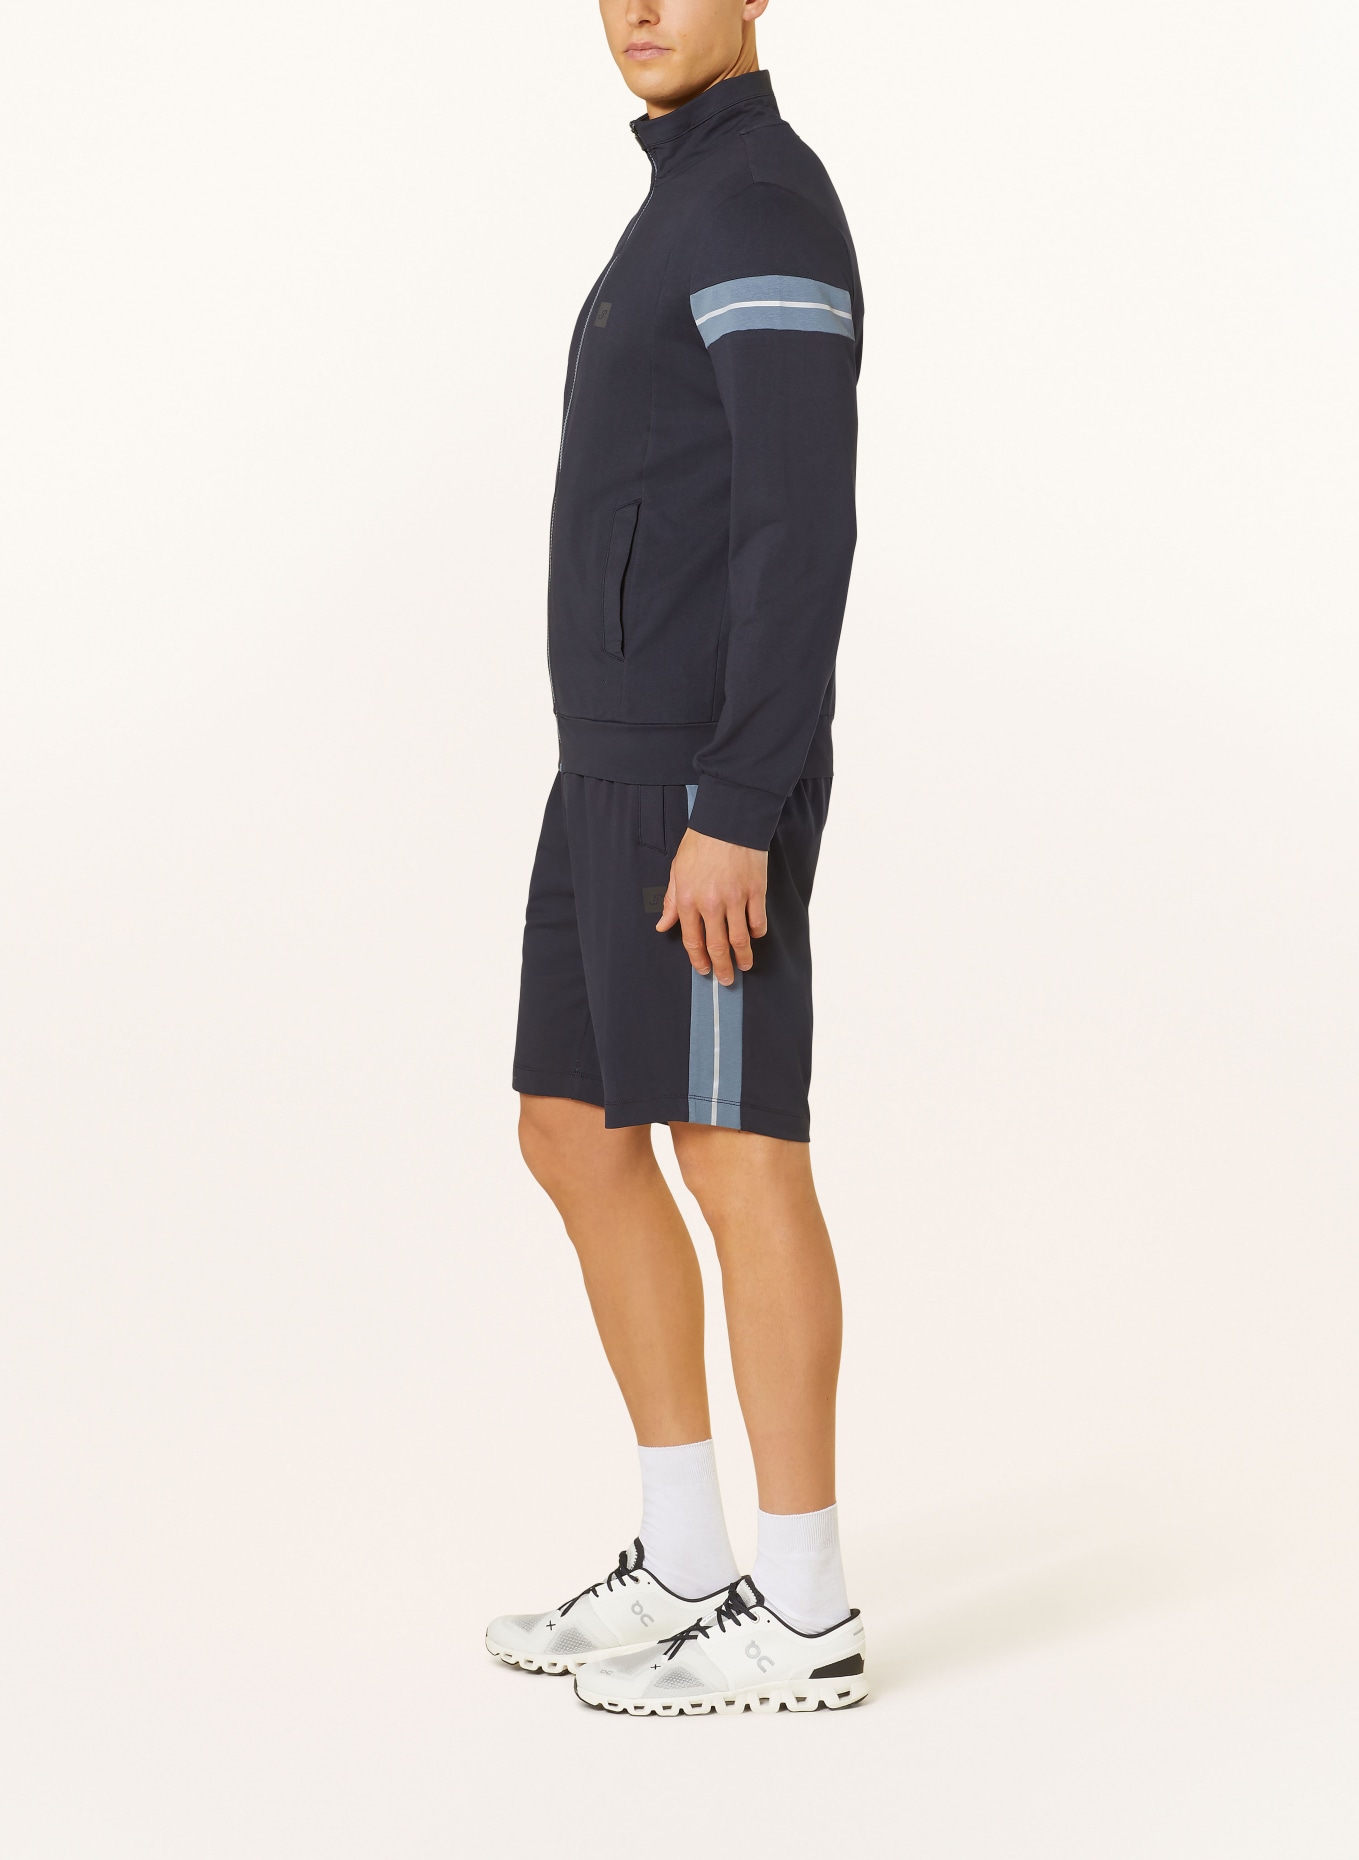 JOY sportswear Sweat shorts JESKO regular fit, Color: DARK BLUE (Image 4)